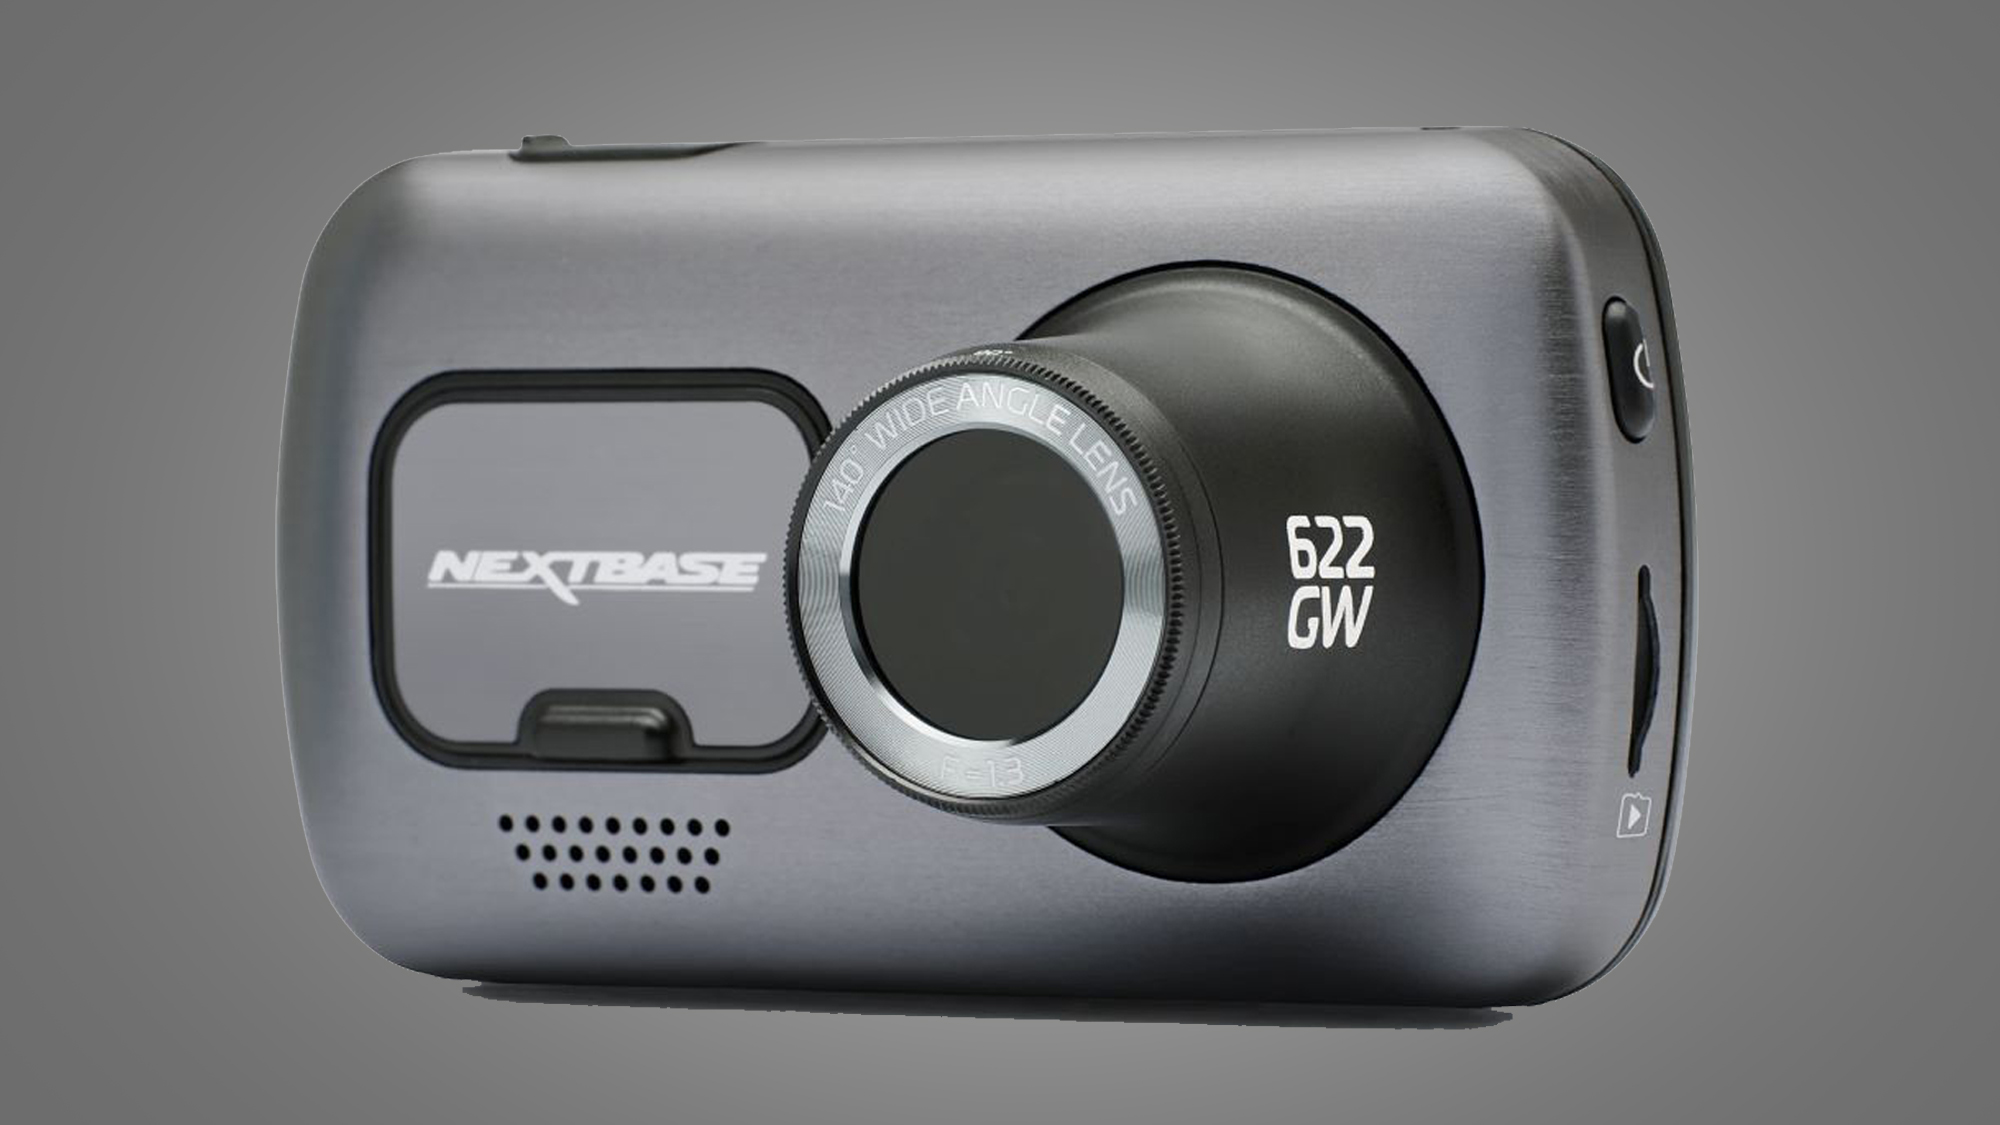 Kameraet Nextbase 622GW mot en grå bakgrunn.